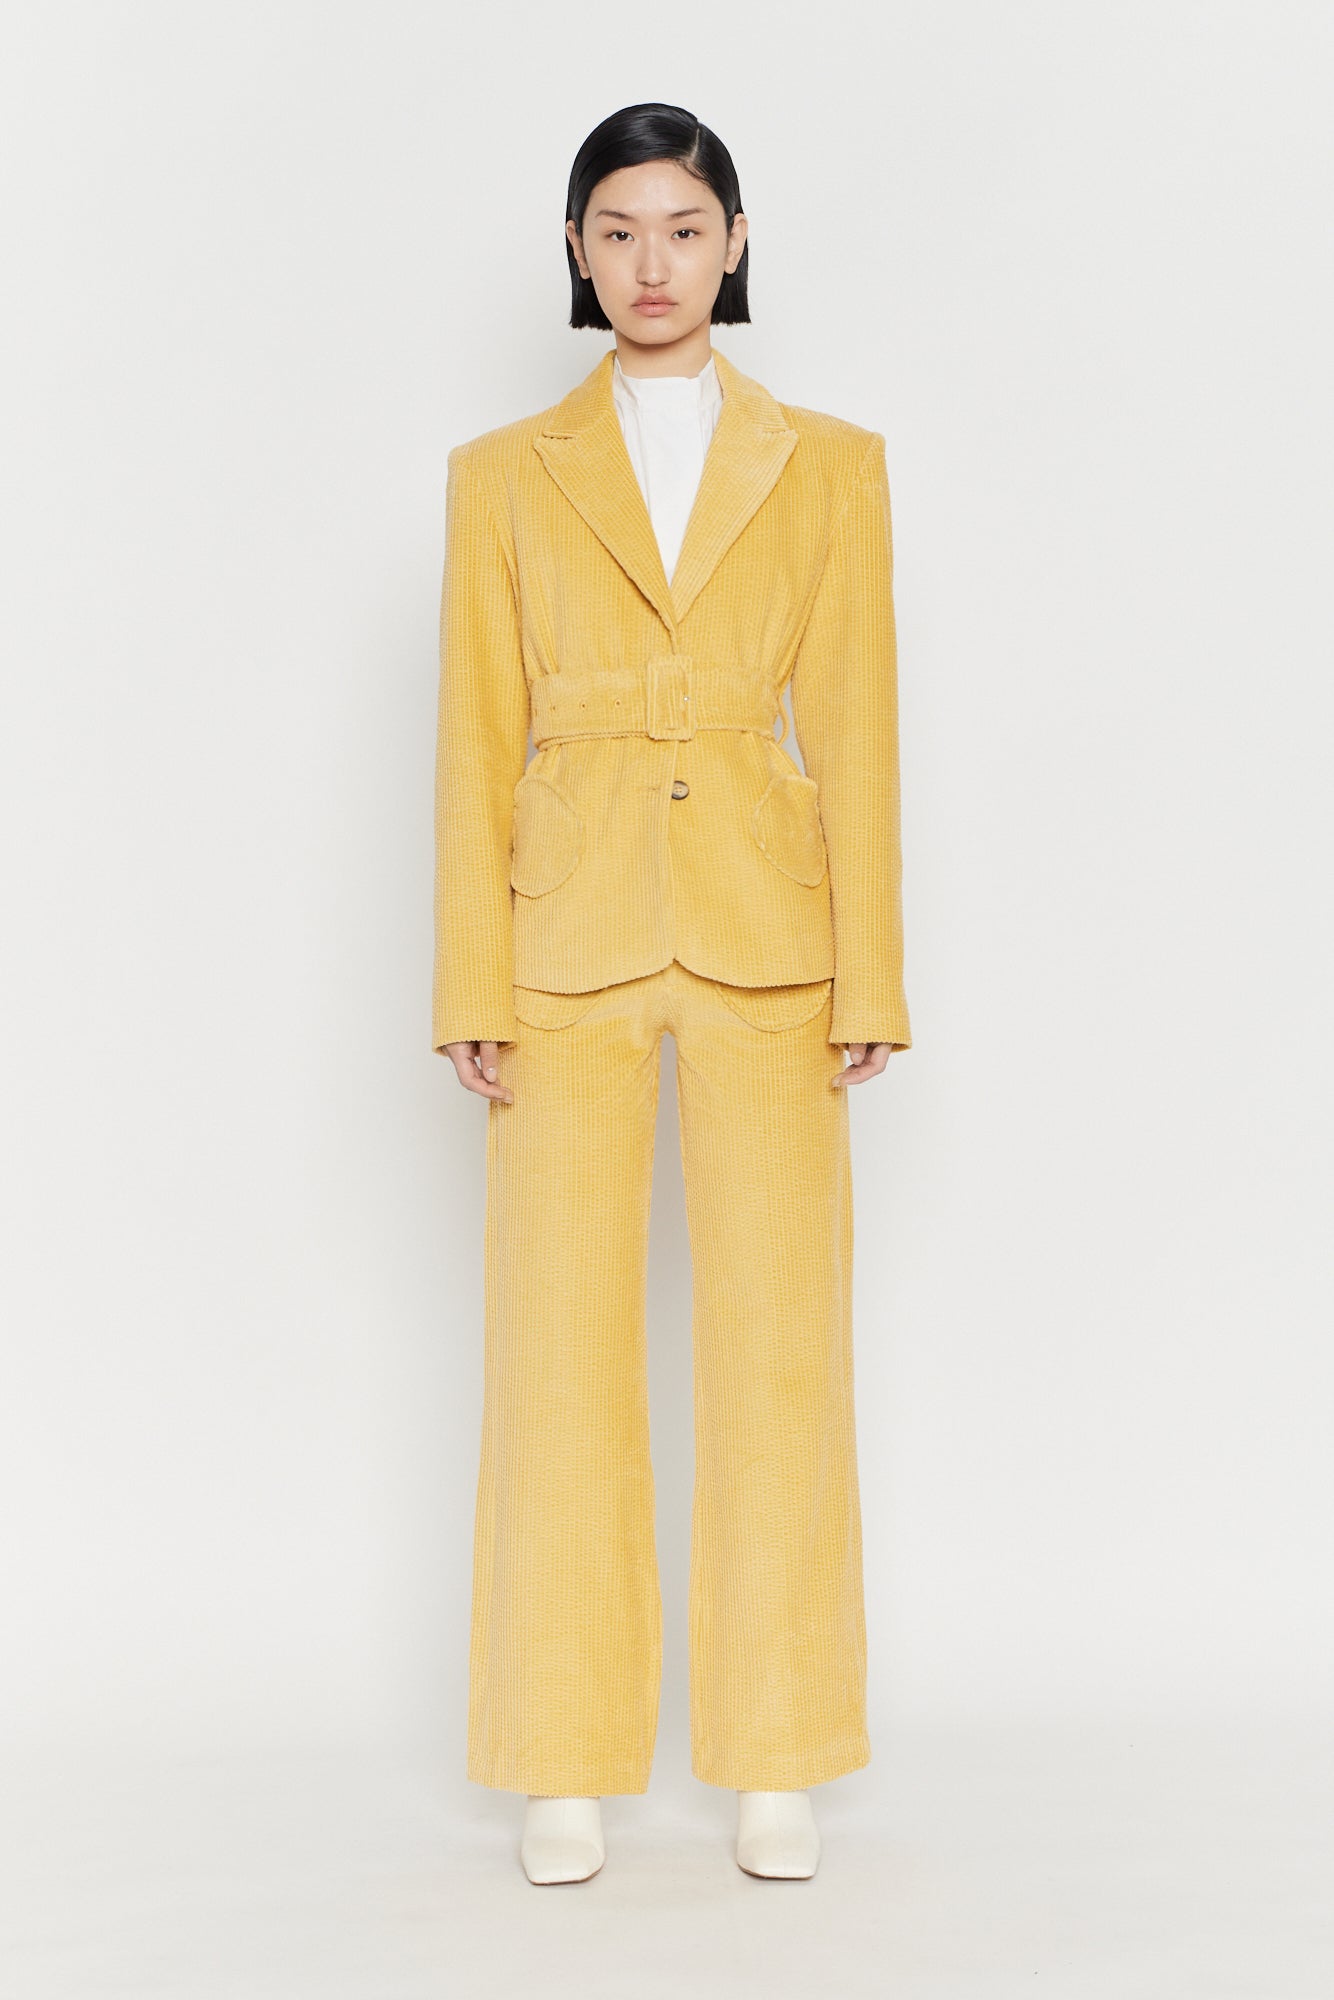 Velvet yellow tailored jacket